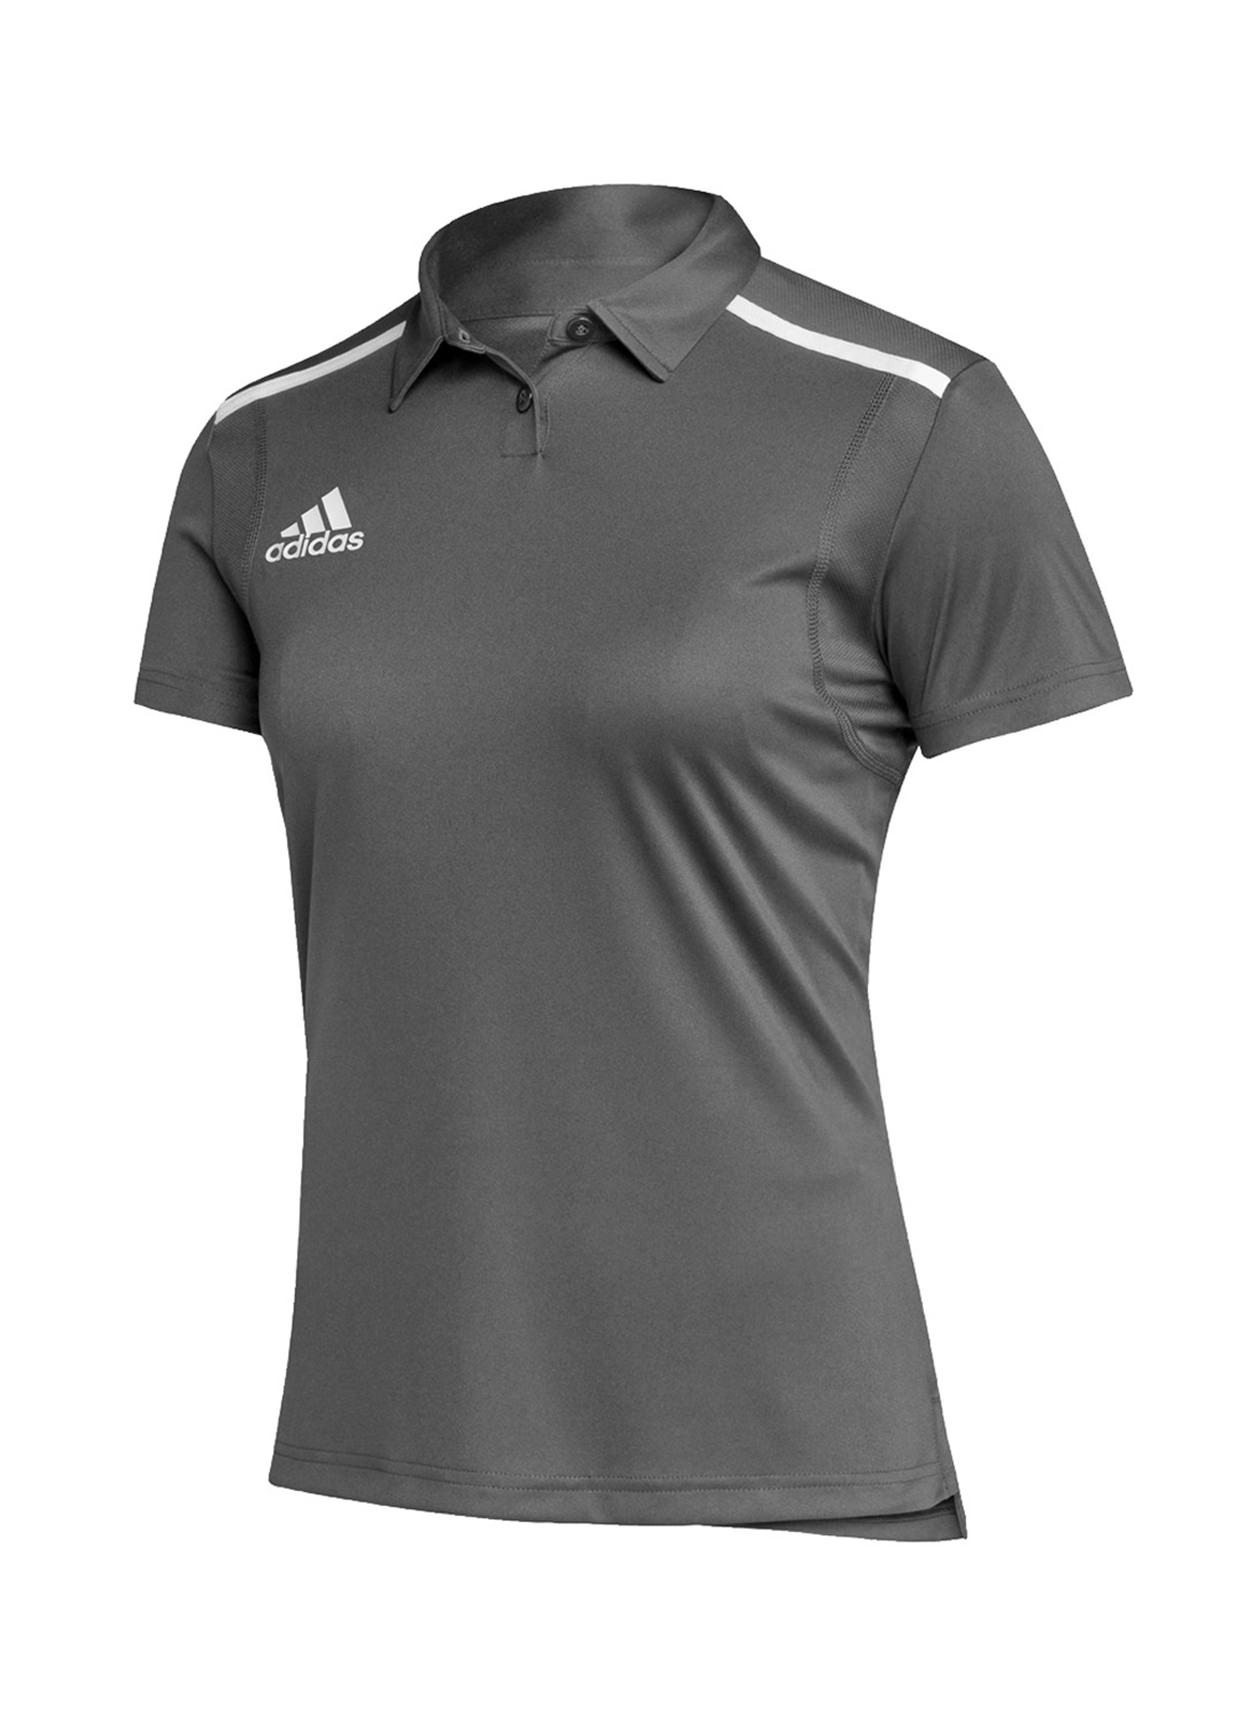 Adidas Women's Team Grey Four/White Team Issue Polo